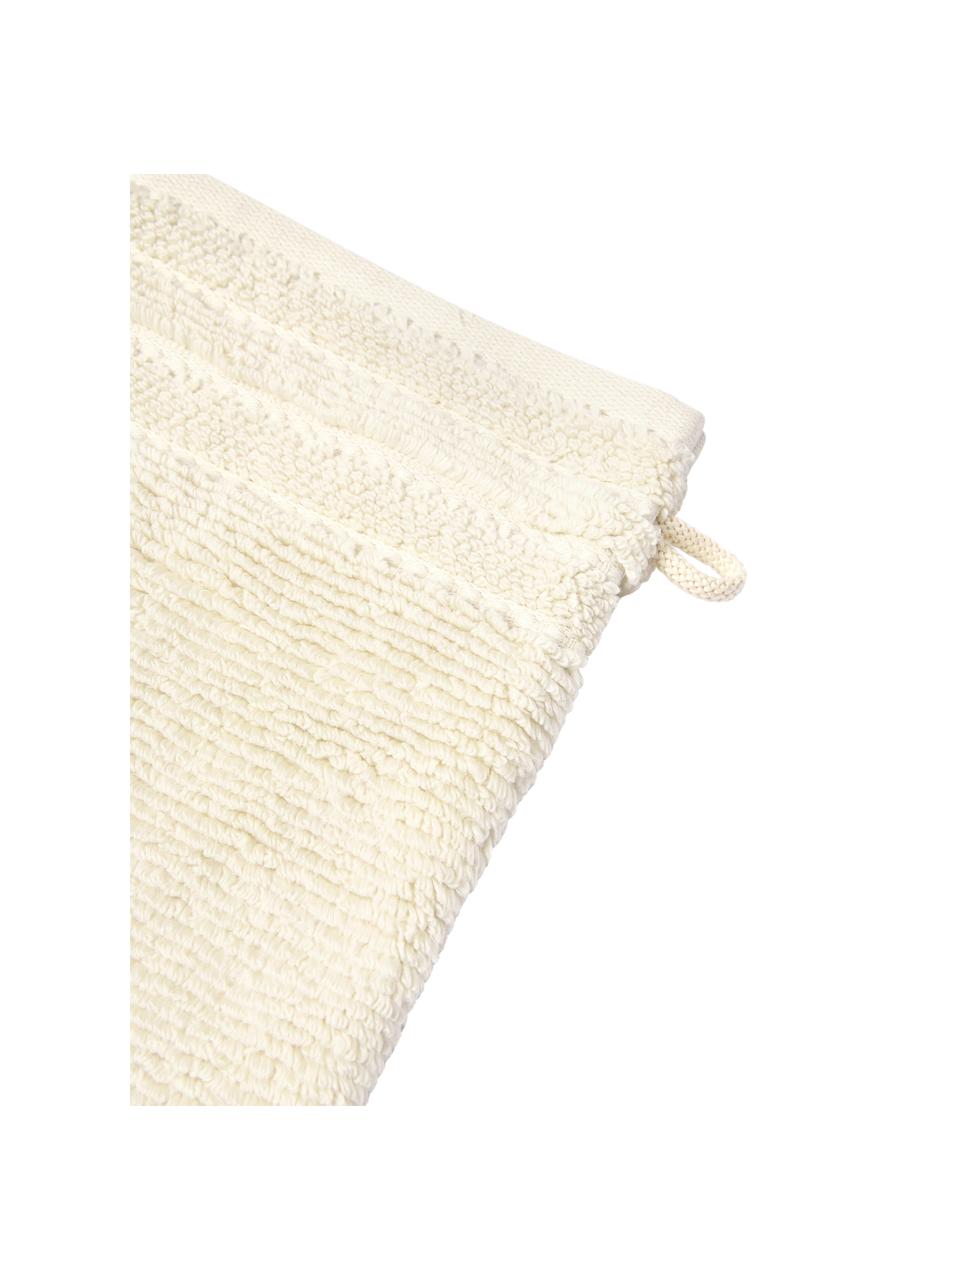 Manoplas de baño con borde a rayas Luxe, 2 uds., Blanco crema, An 16 x Al 22 cm